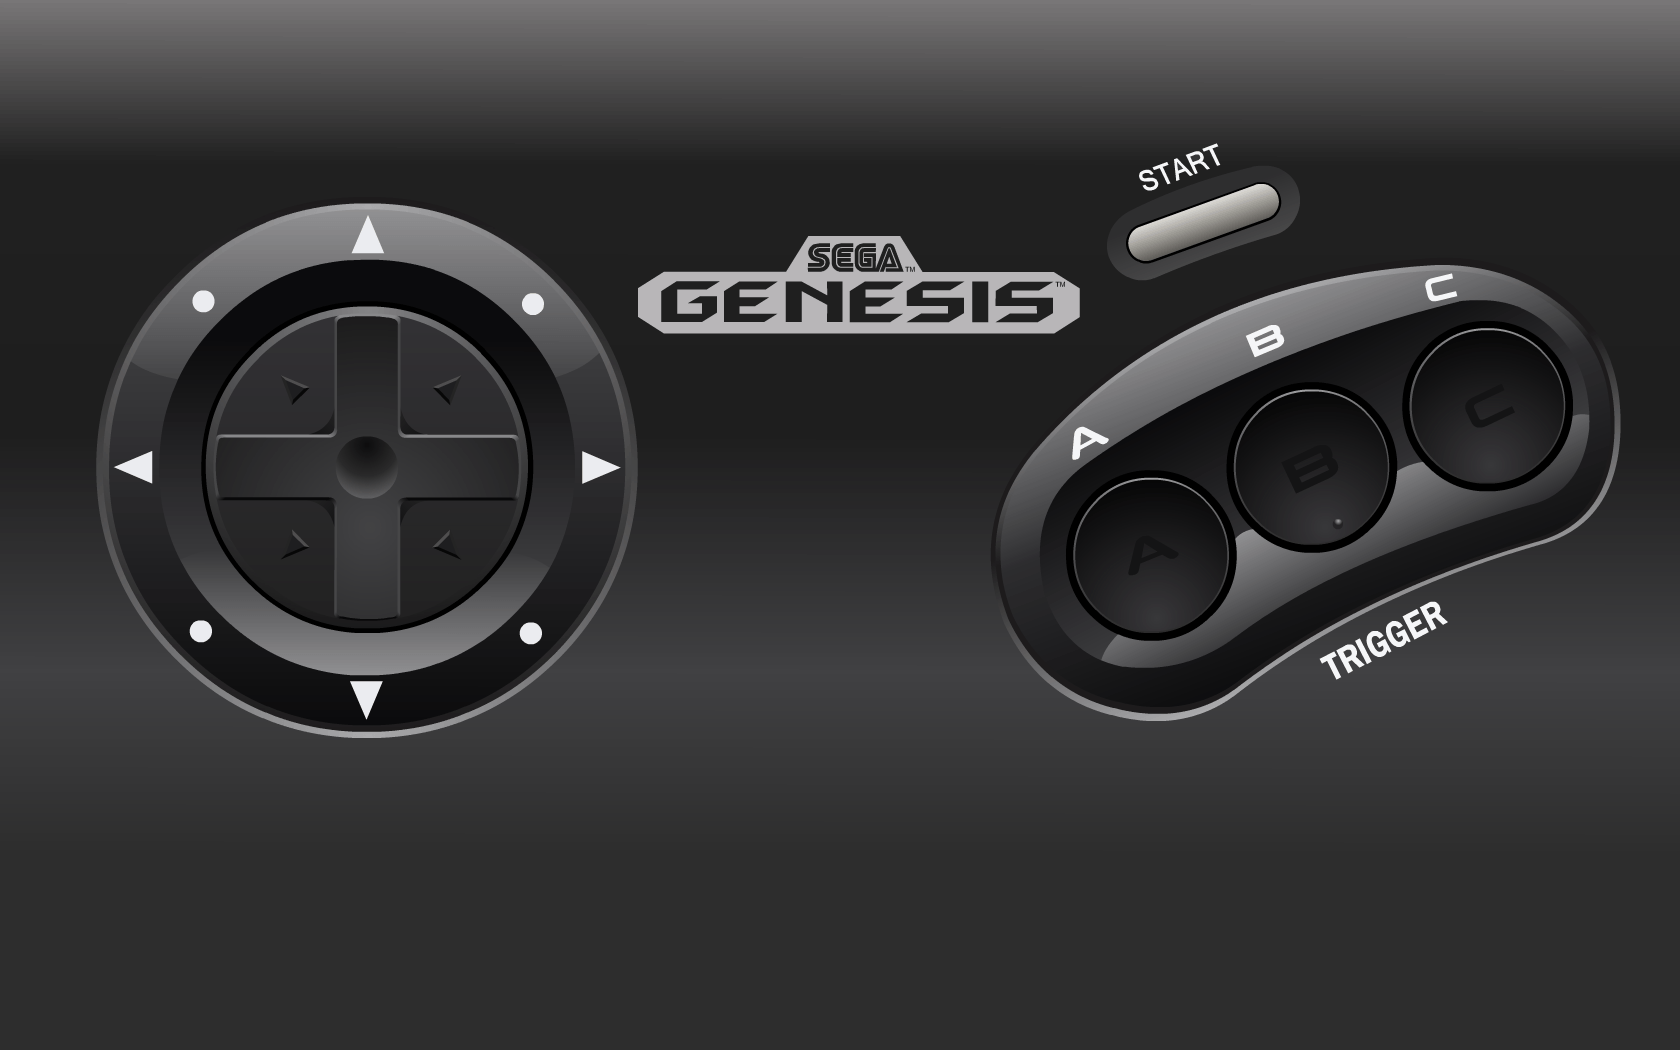 Gallery For Gt Sega Genesis Controller Wallpaper